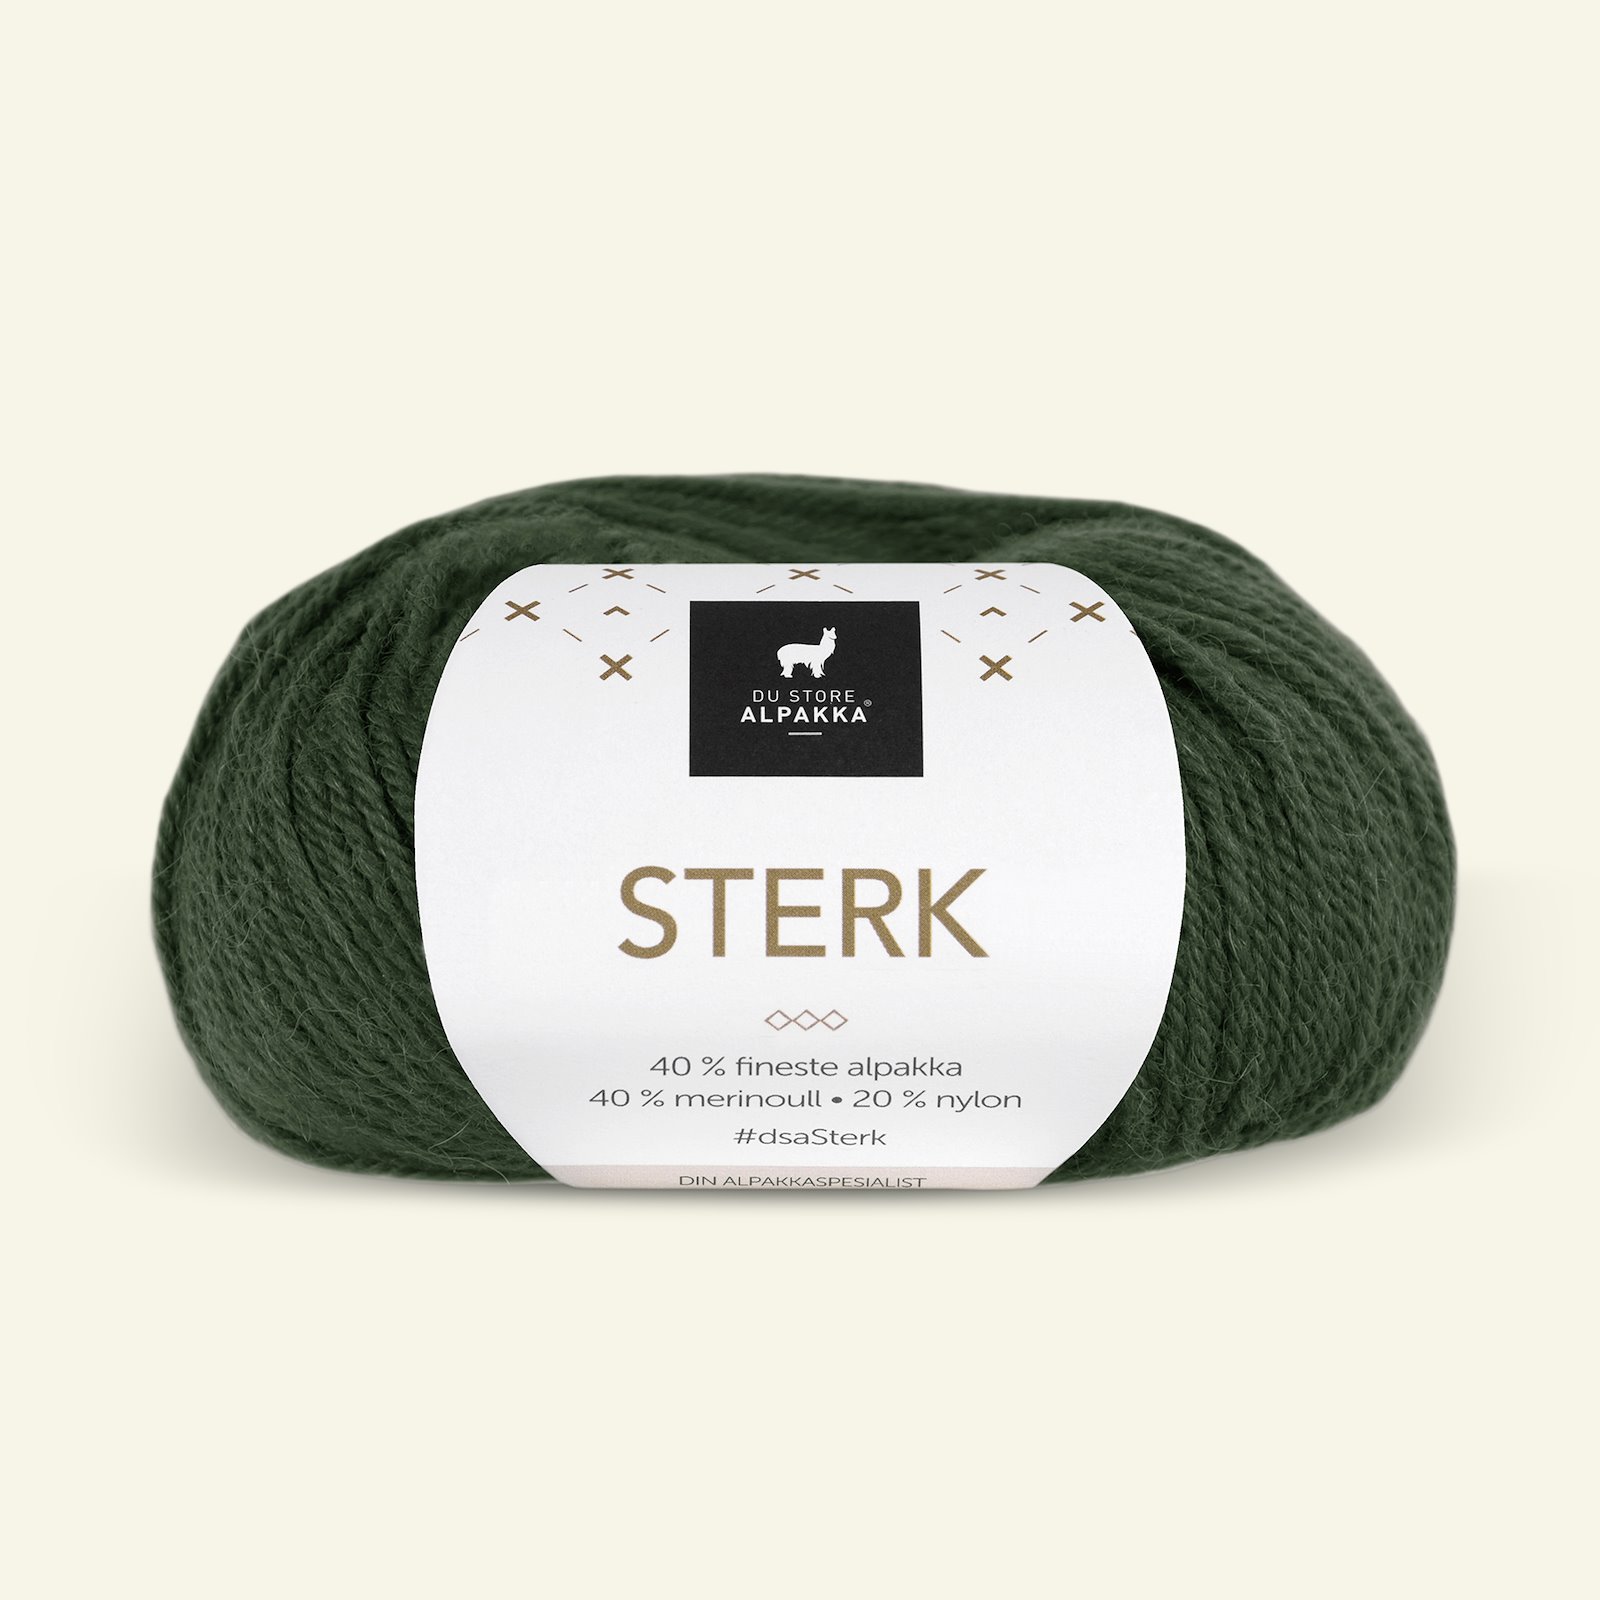 Du Store Alpakka, alpakka merino blandingsgarn "Sterk", flaskegrønn (860) 90000682_pack_b